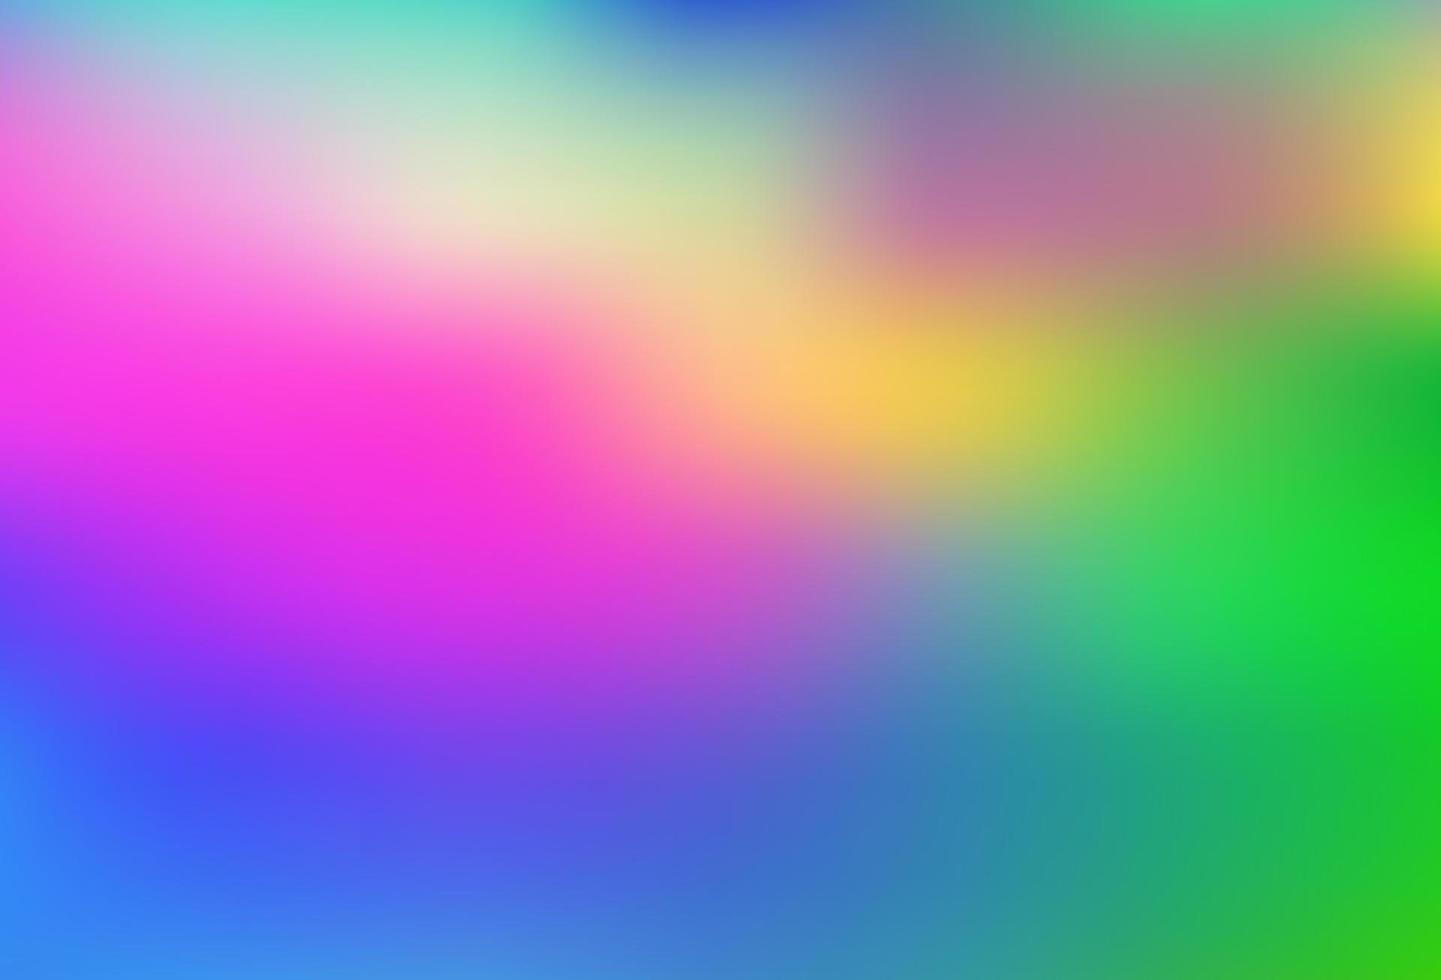 helles mehrfarbiges, abstraktes Bokeh-Vektormuster des Regenbogens. vektor